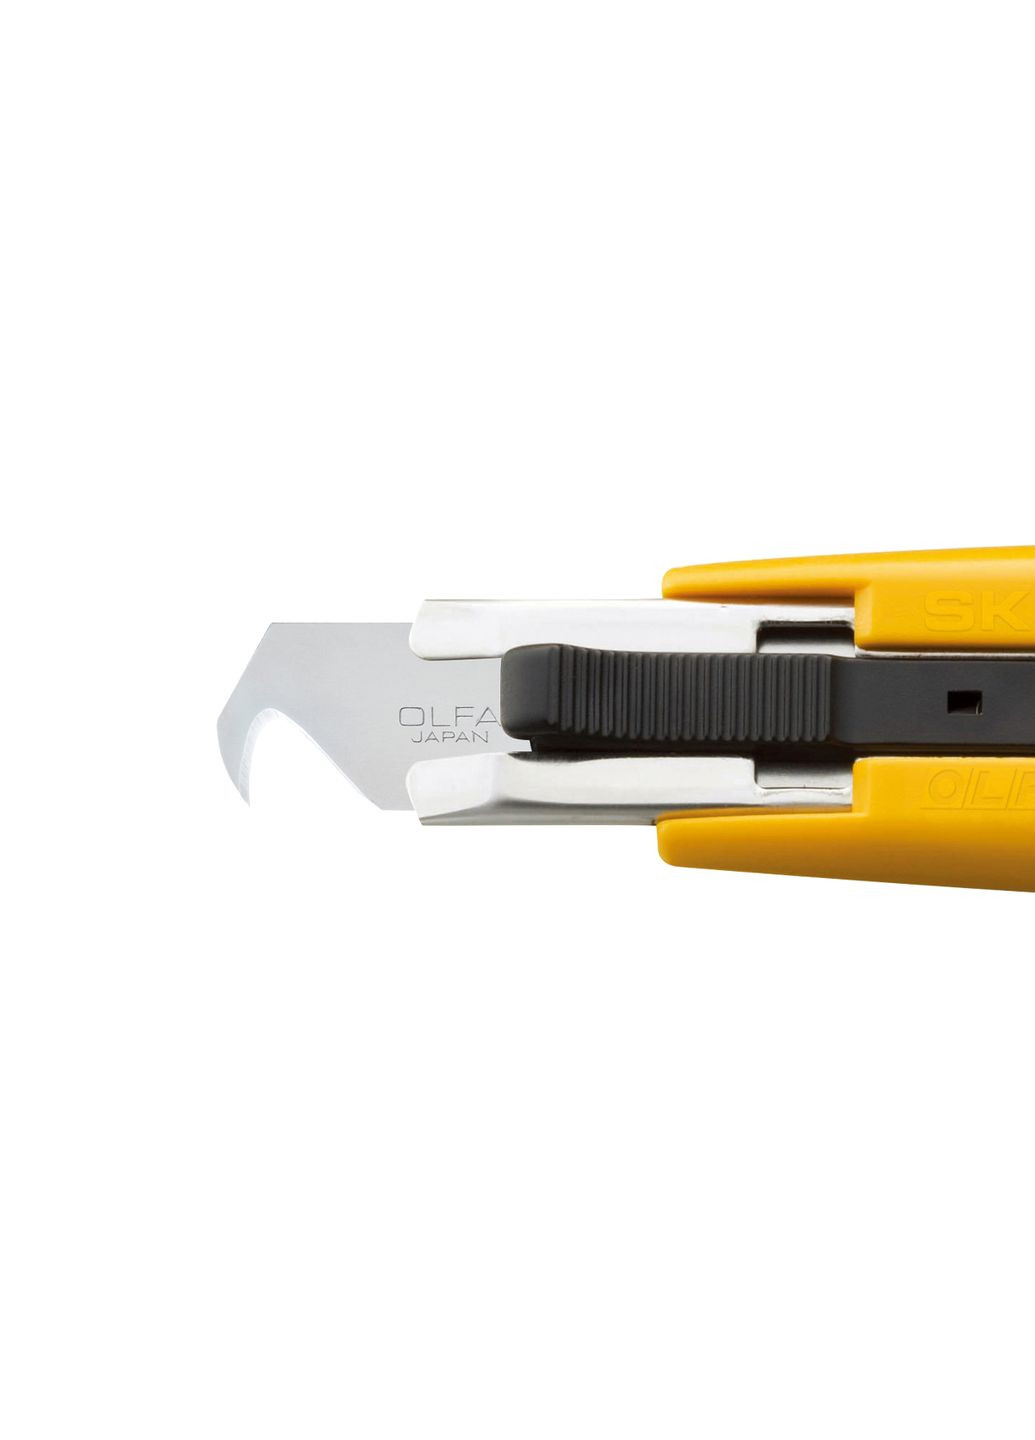 Нож SK-4/HOK с автоматическим втягиванием крючкообразного лезвия слайдерный механизм спиральная пружина (16152) Olfa (276255161)